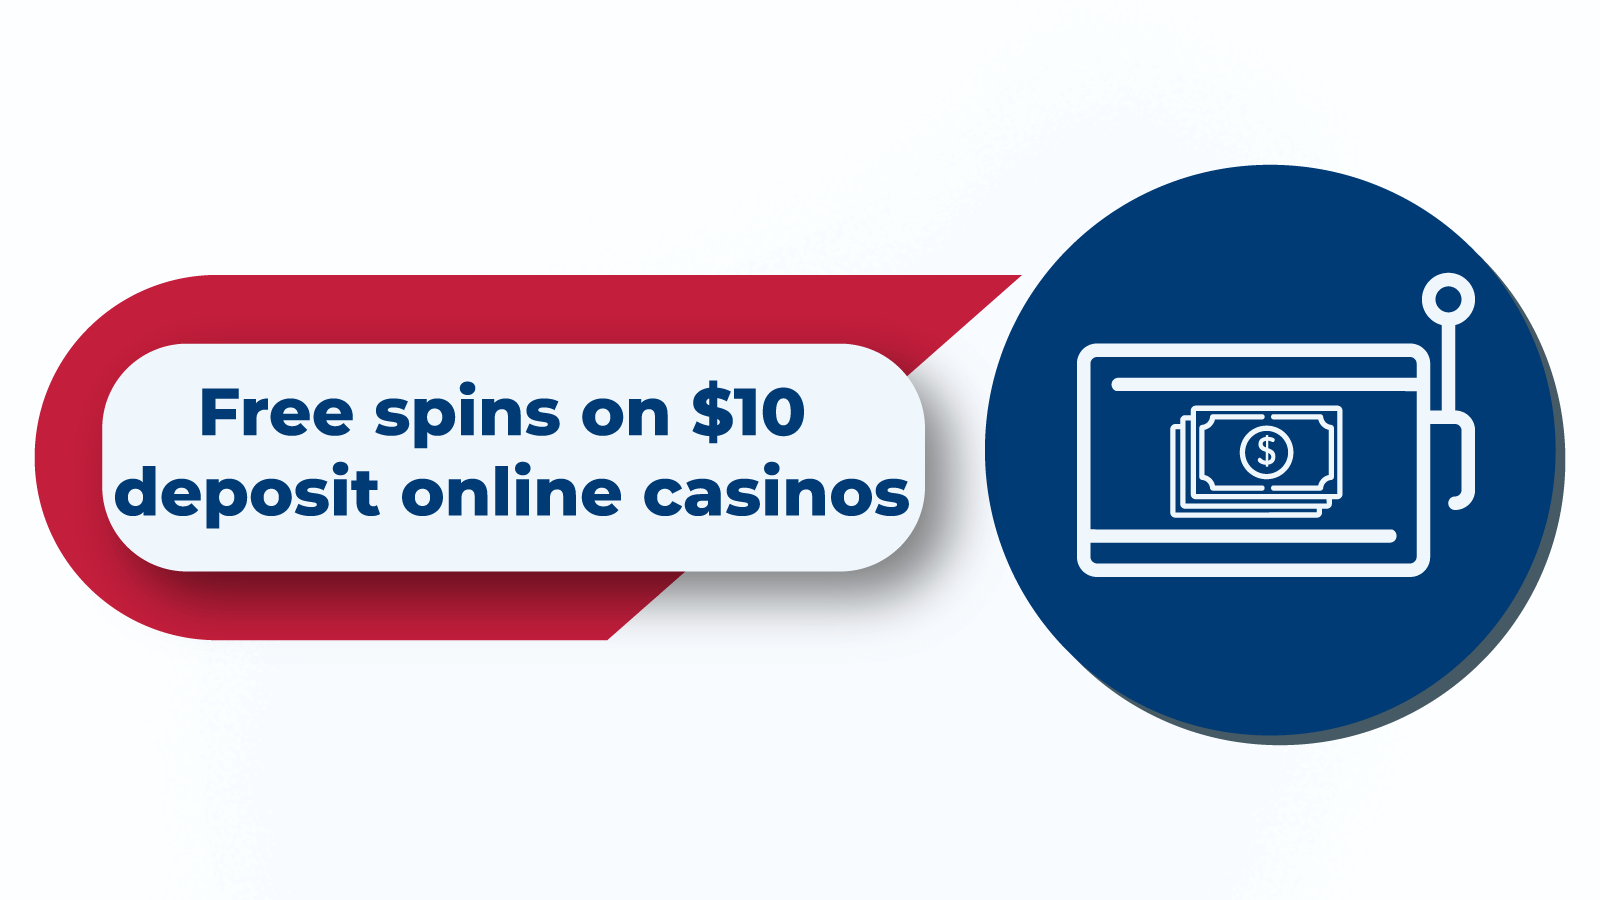 Free spins on $10 deposit online casinos